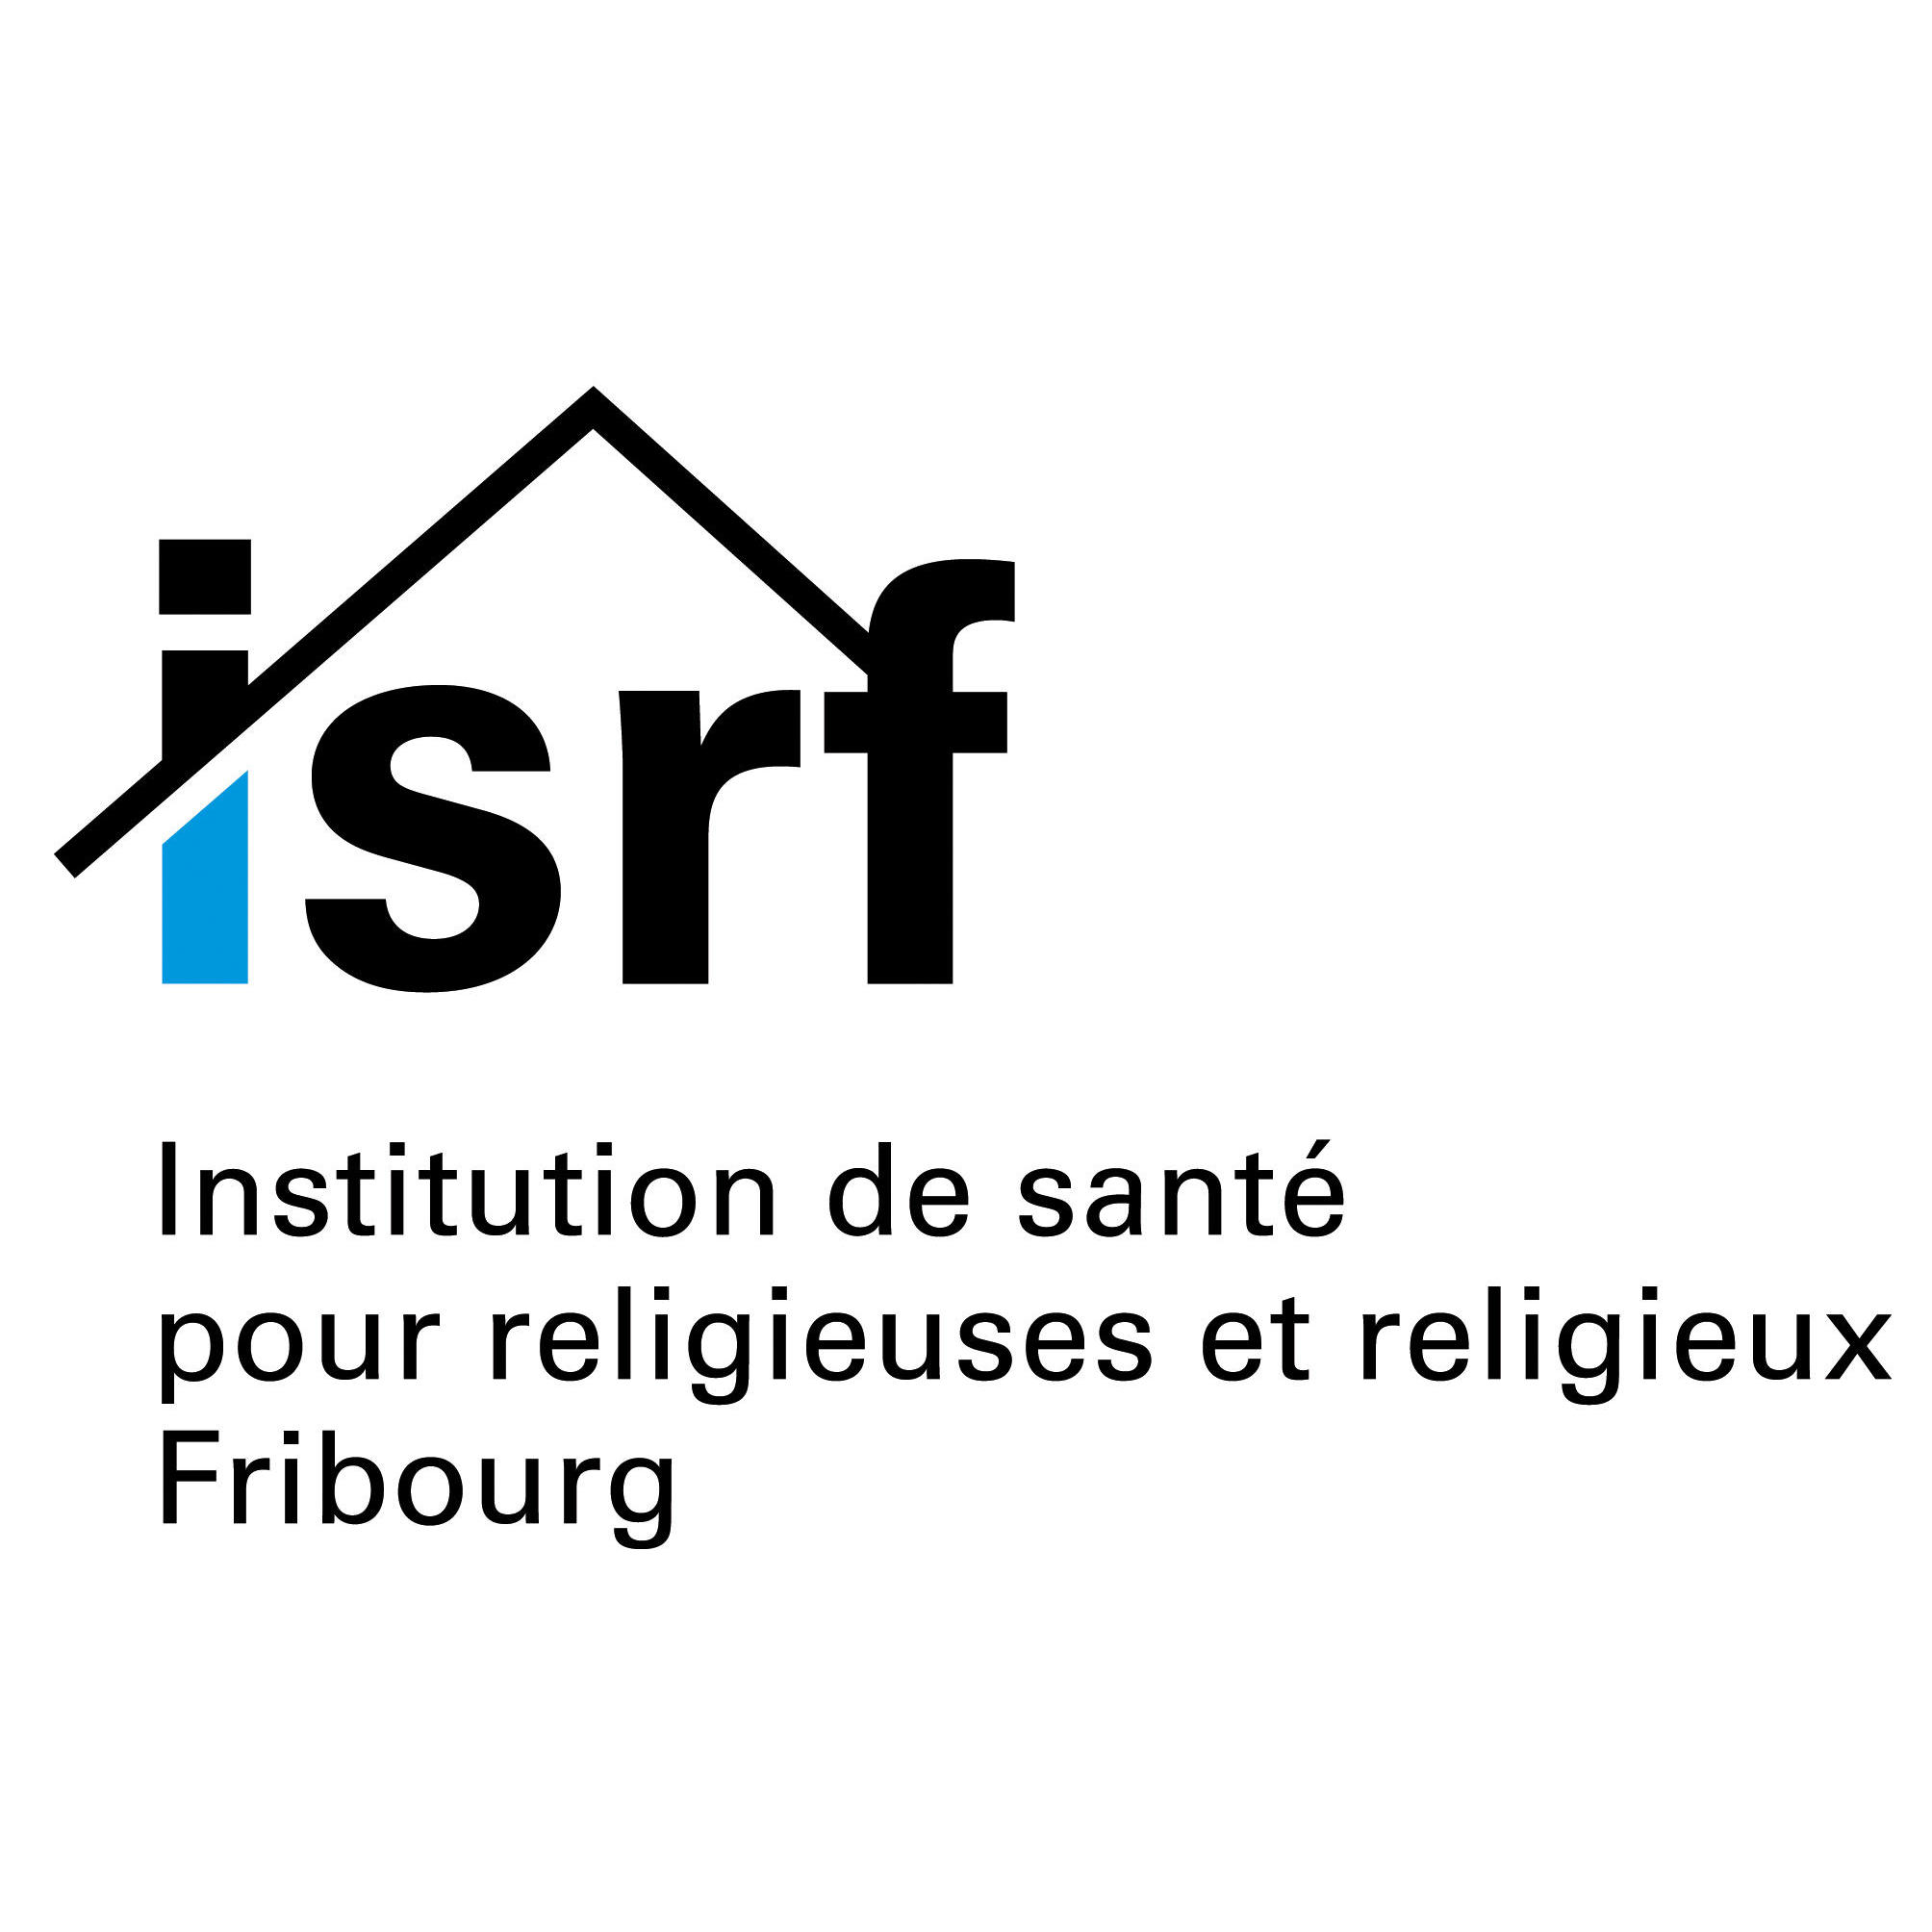 Institution de santé pour religieuses et religieux Fribourg ISRF Logo